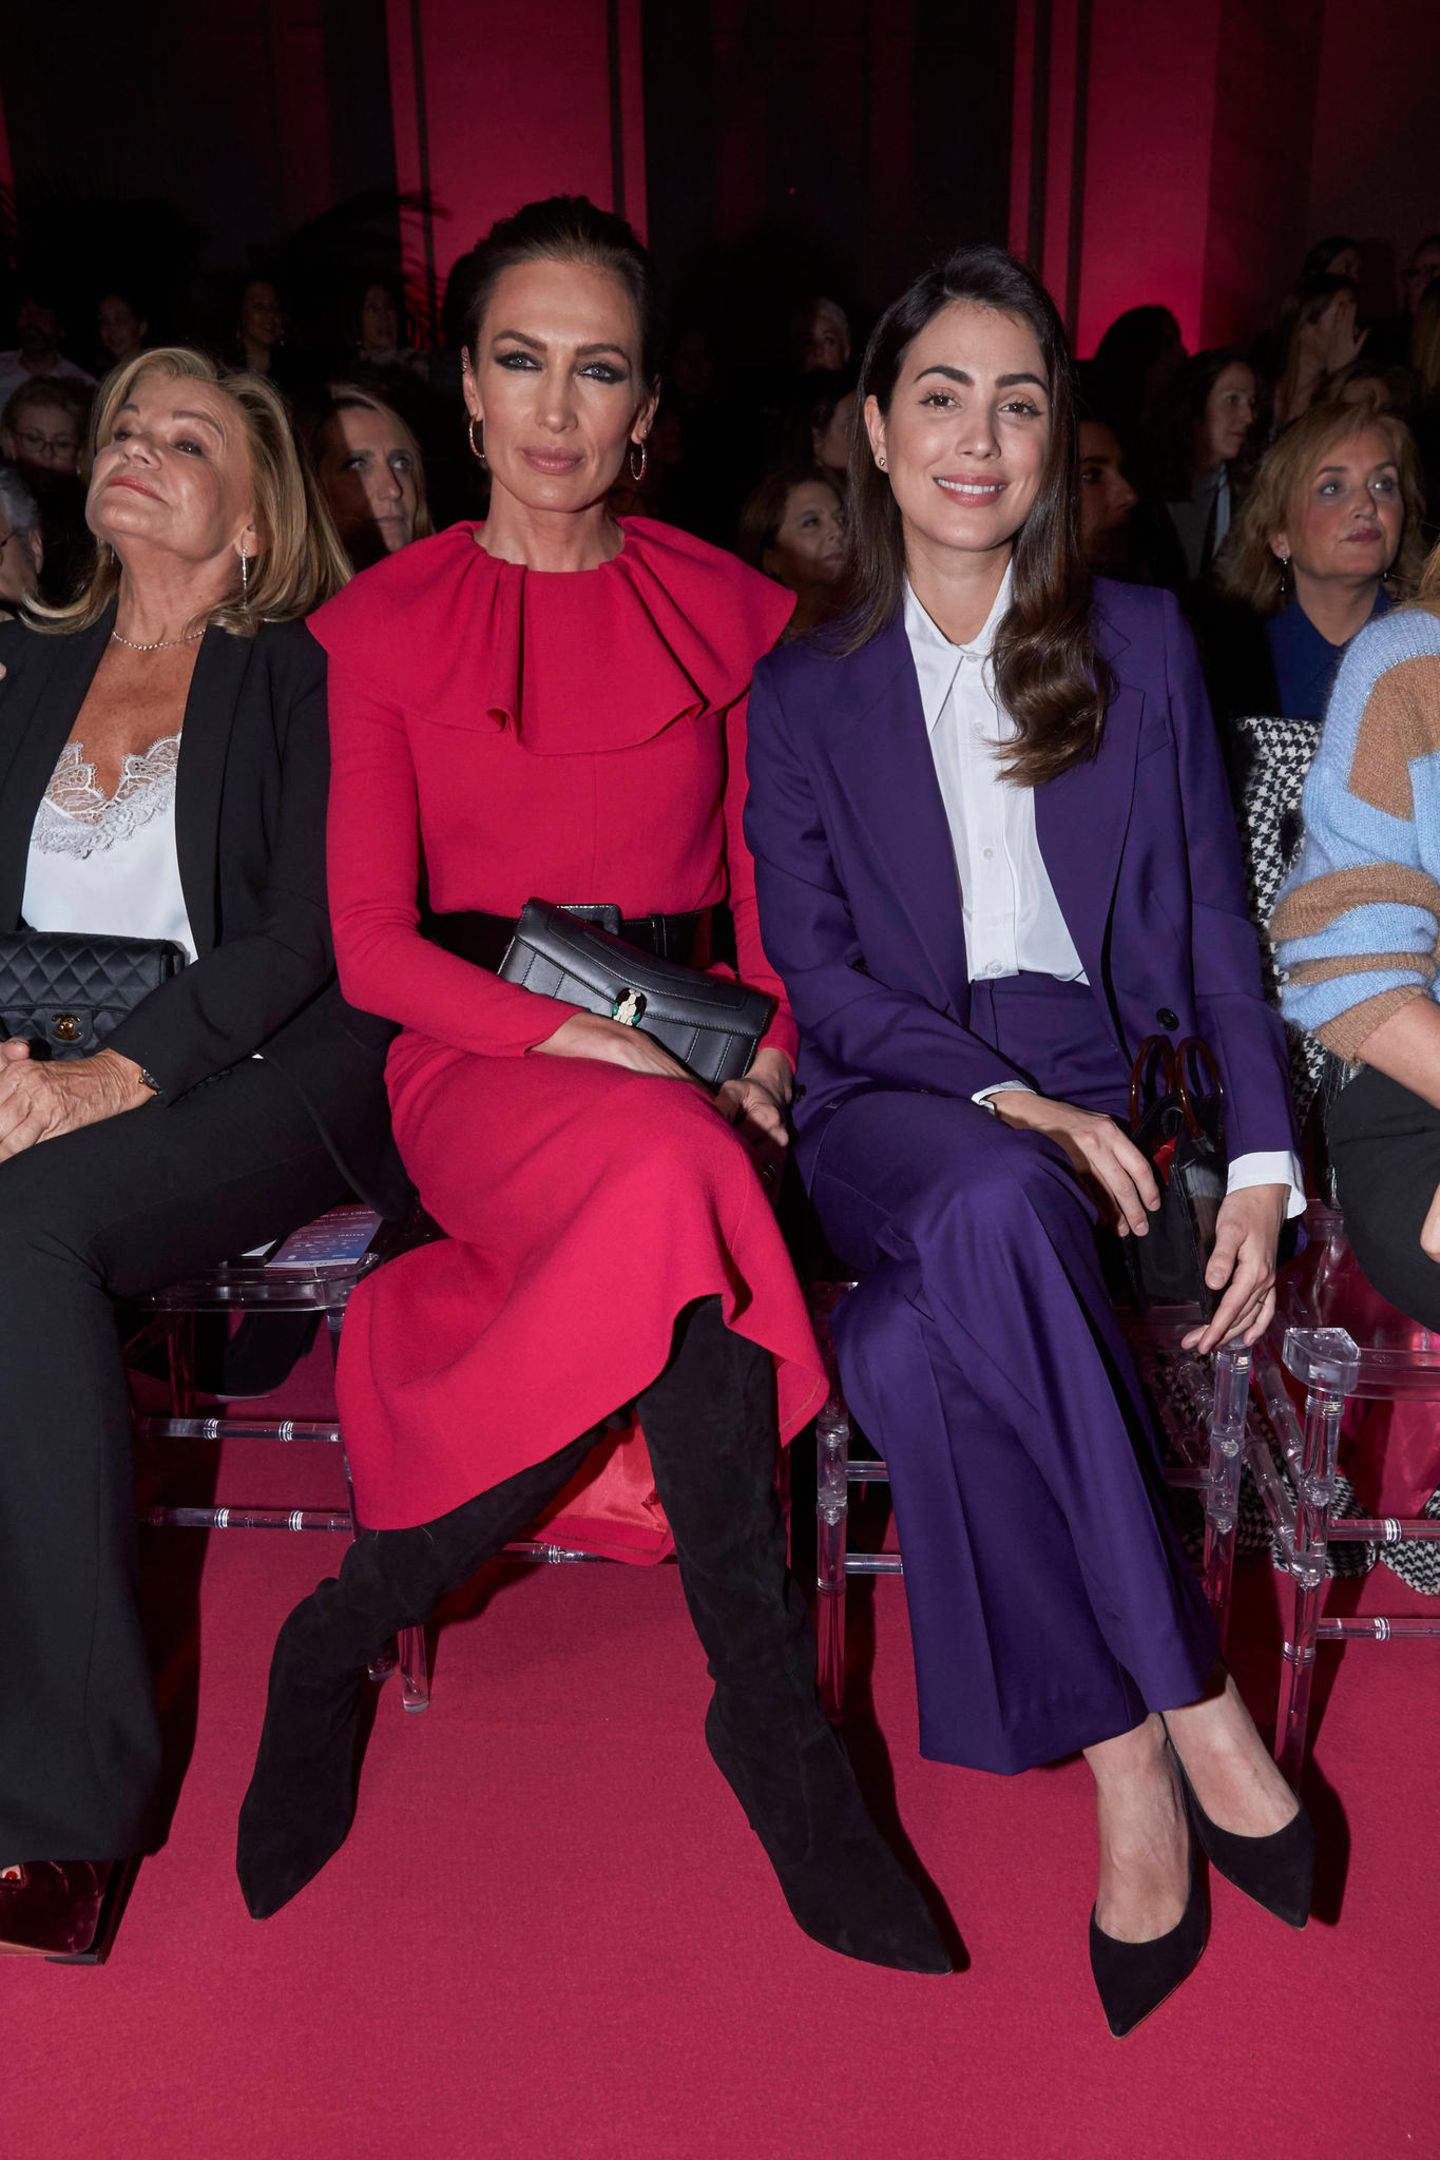 Die studierte Juristin ist in der Modebranche gut vernetzt. Sie sitzt in der Front Row neben Nieves Alvarez, einer spanischen Moderatorin, und schaut sich die Show des spanischen Labels Pertegaz an. 